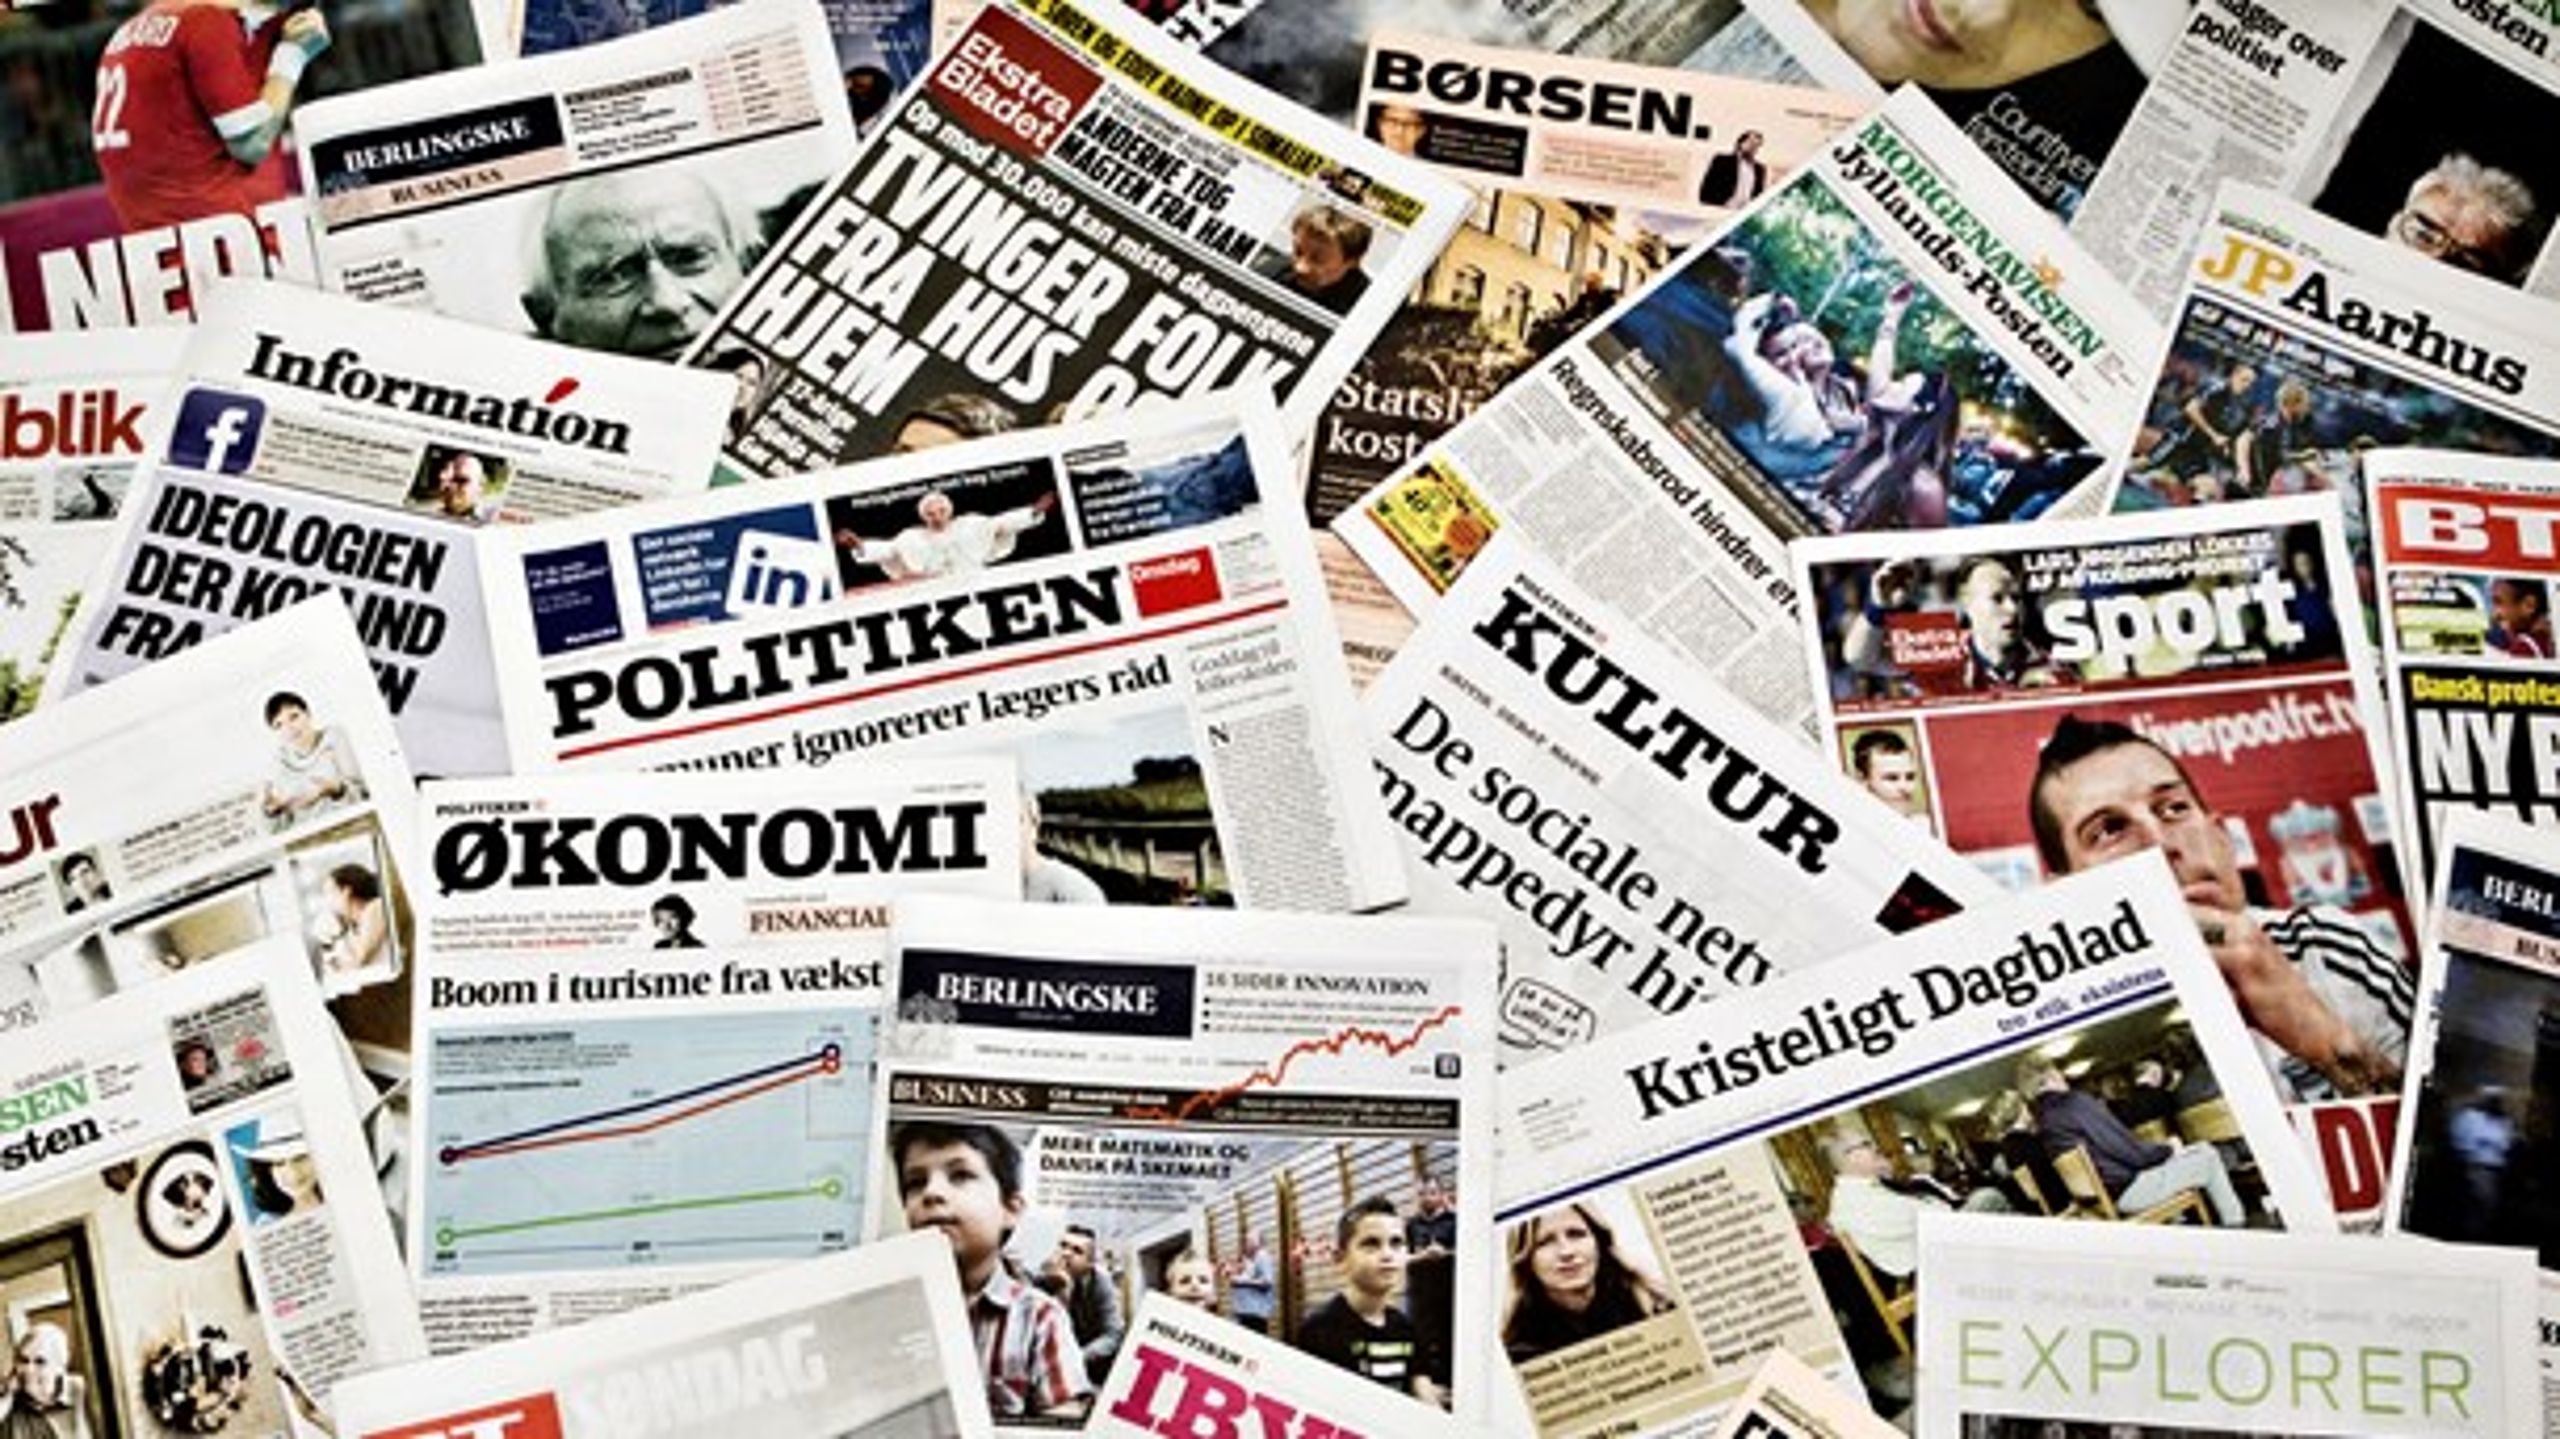 Flere af de danske dagblade modtager mediestøtte. Hvis de vil fortsætte med det, skal de fremlægge ledelsens løn. Sådan lyder det fra Venstre og Socialdemokratiet.